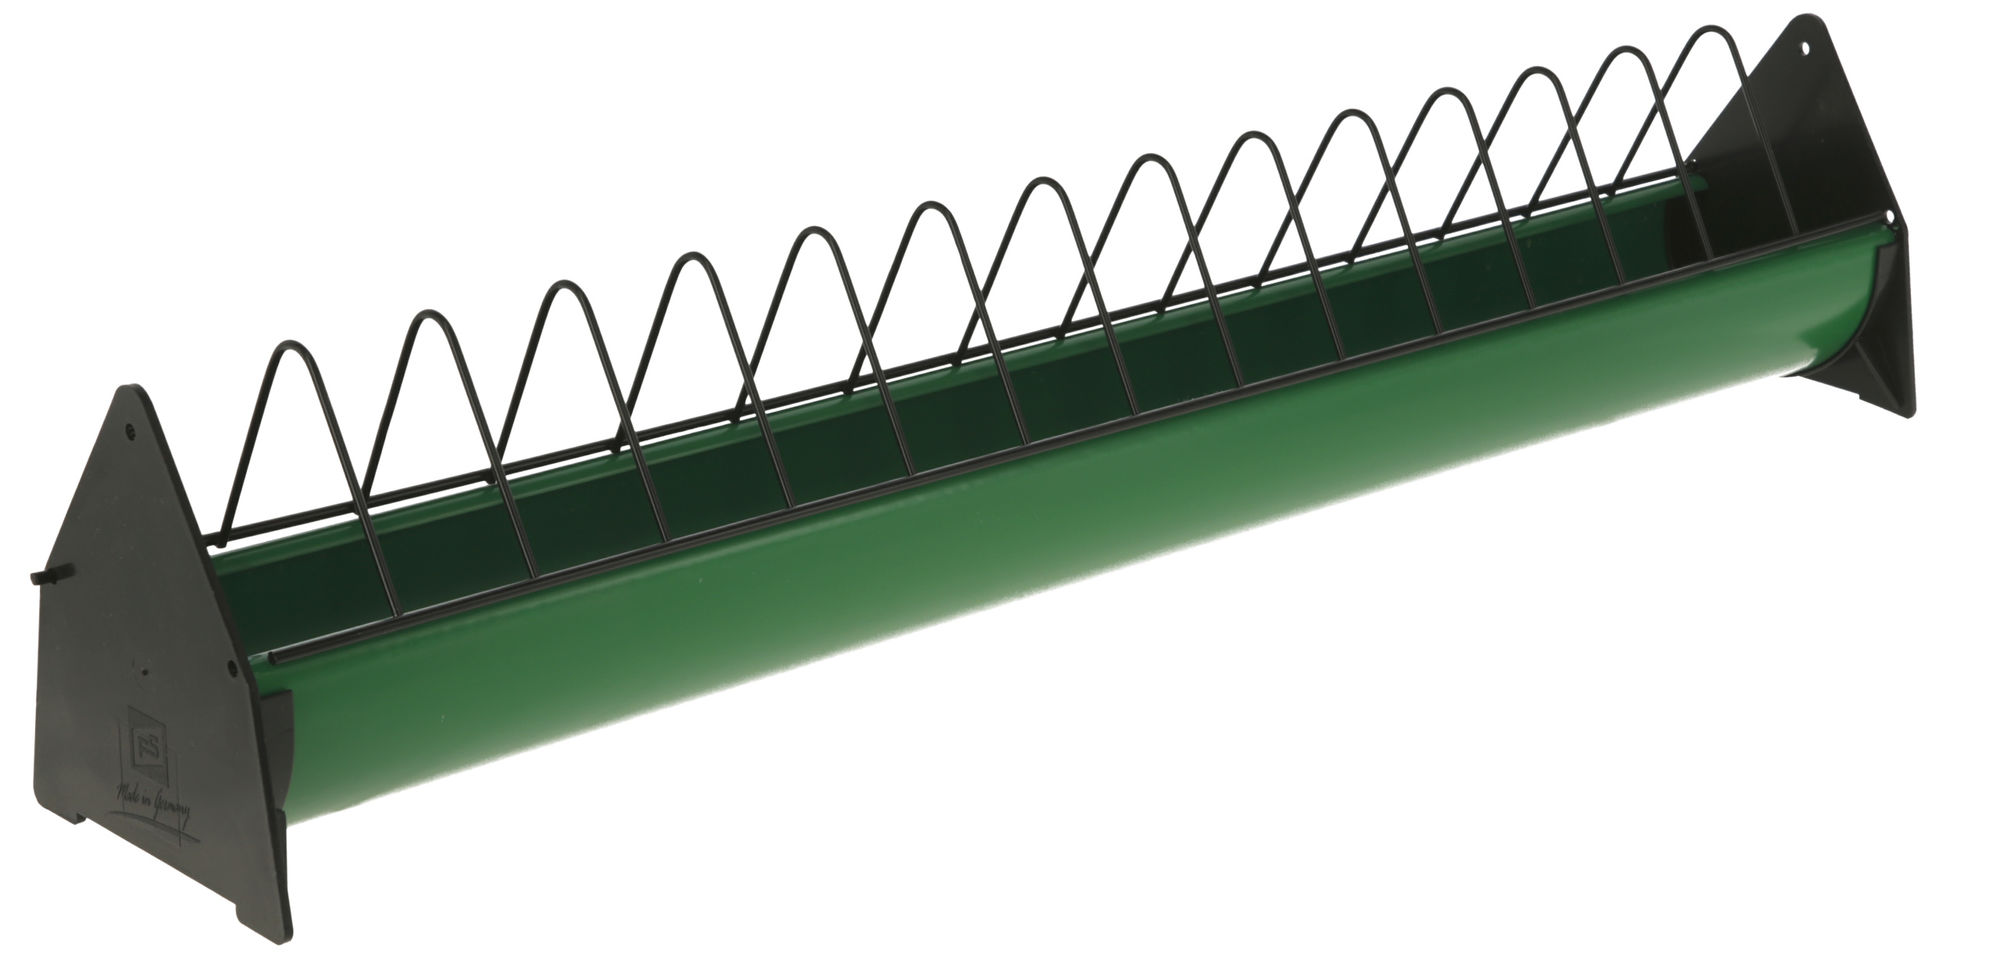 Lang-Futtertrog 75 cm x 10 cm, für Junghennen, Kunststoff grün/schwarz